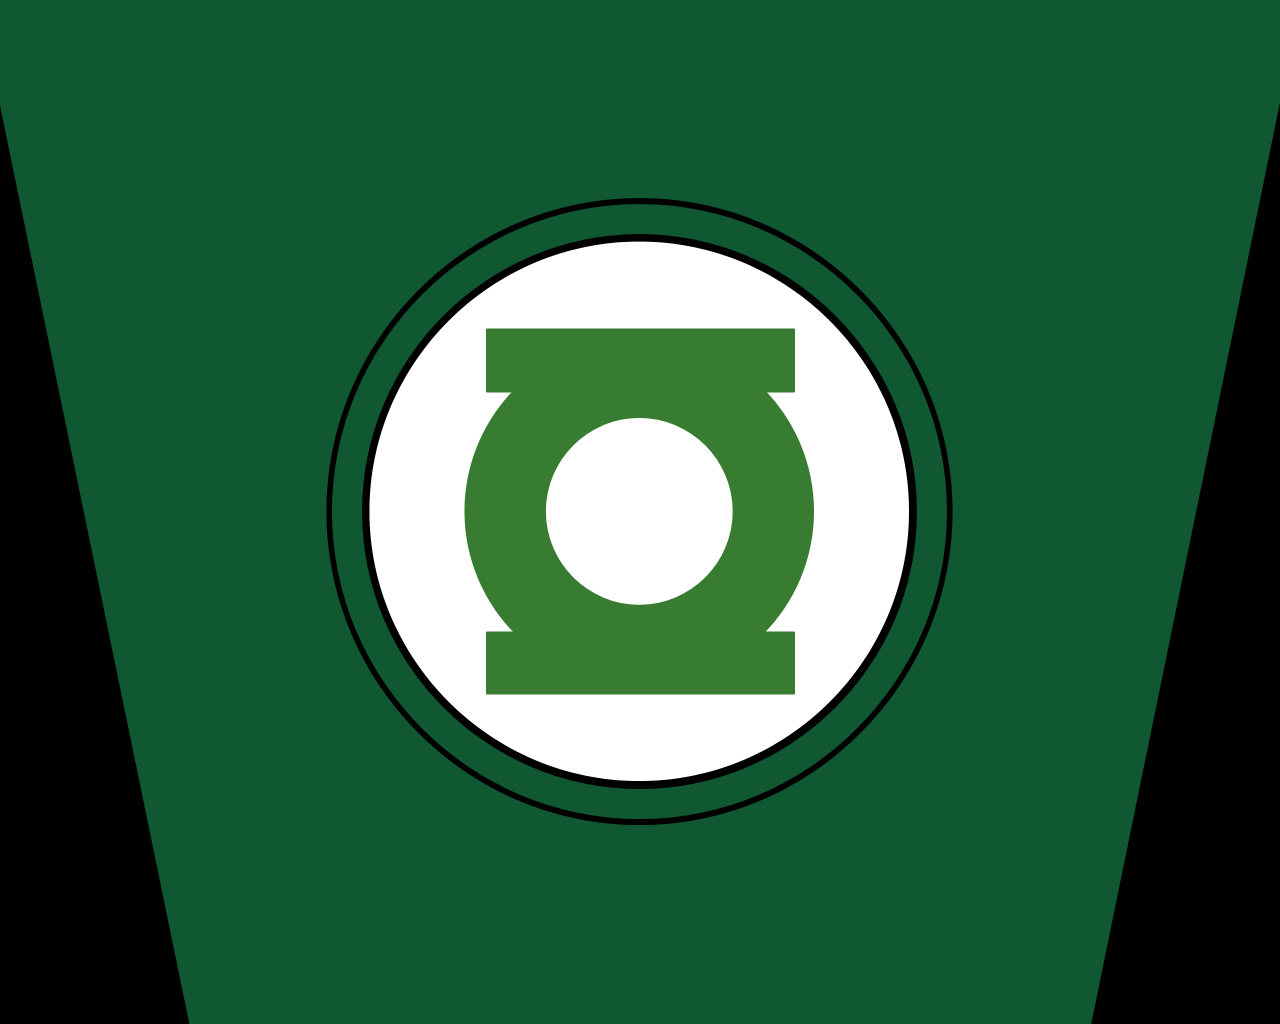 Logos For > Green Lantern Logo Iphone Wallpapers